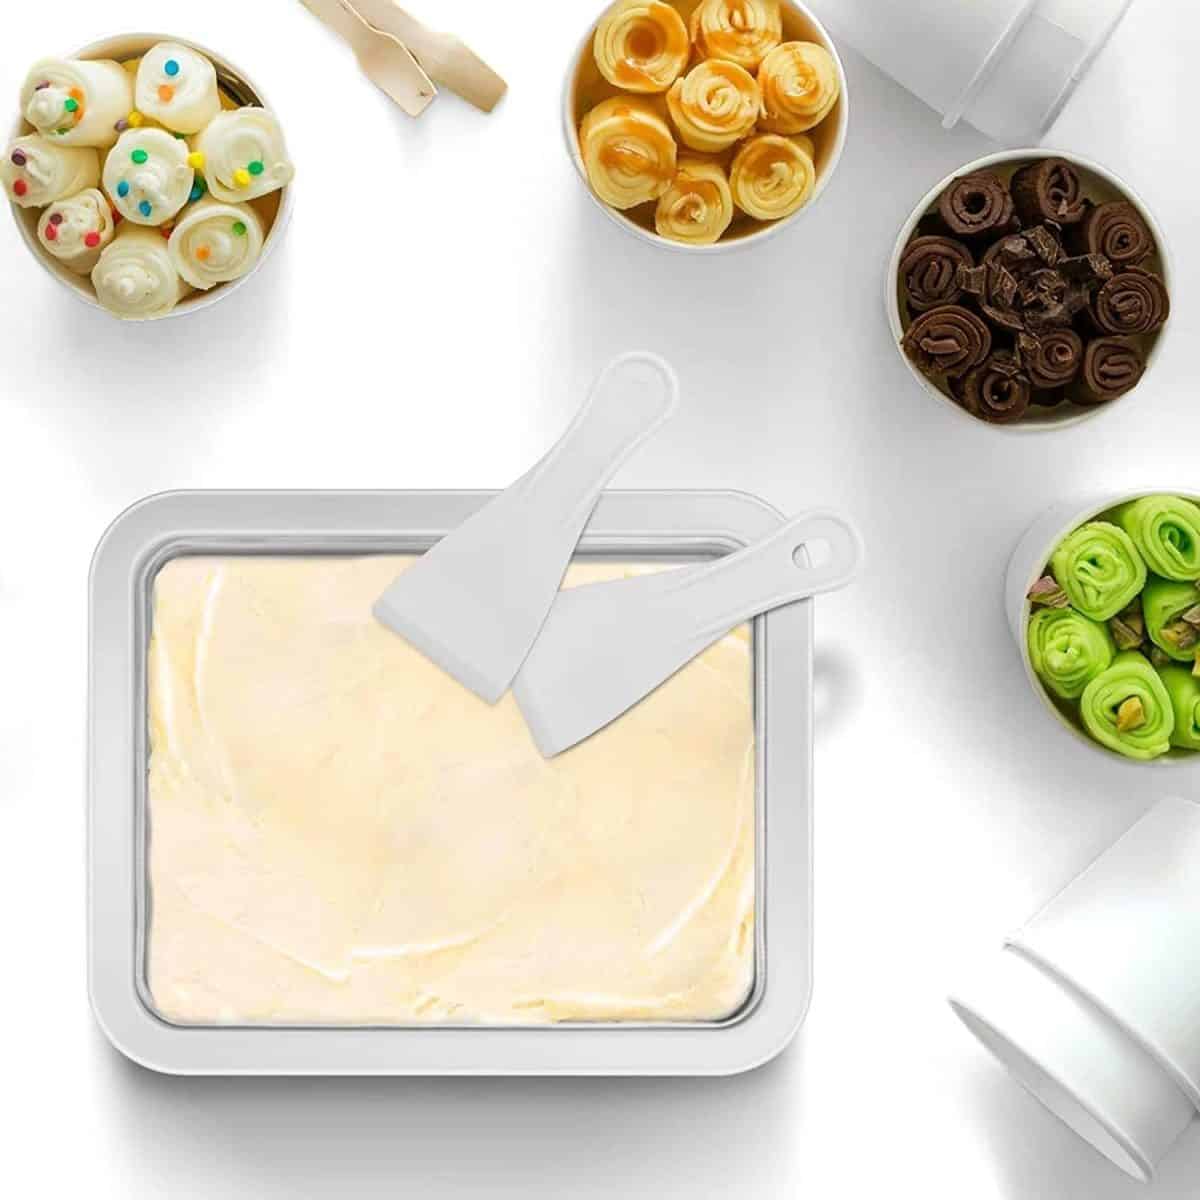 ロールアイスクリームメーカー - 子供向けインスタントアイスクリームメーカー - ロールアイスクリームマシン - ヨーグルトメーカー - スイートスポットフローズンフルーツマシン - 子供への素晴らしいギフト